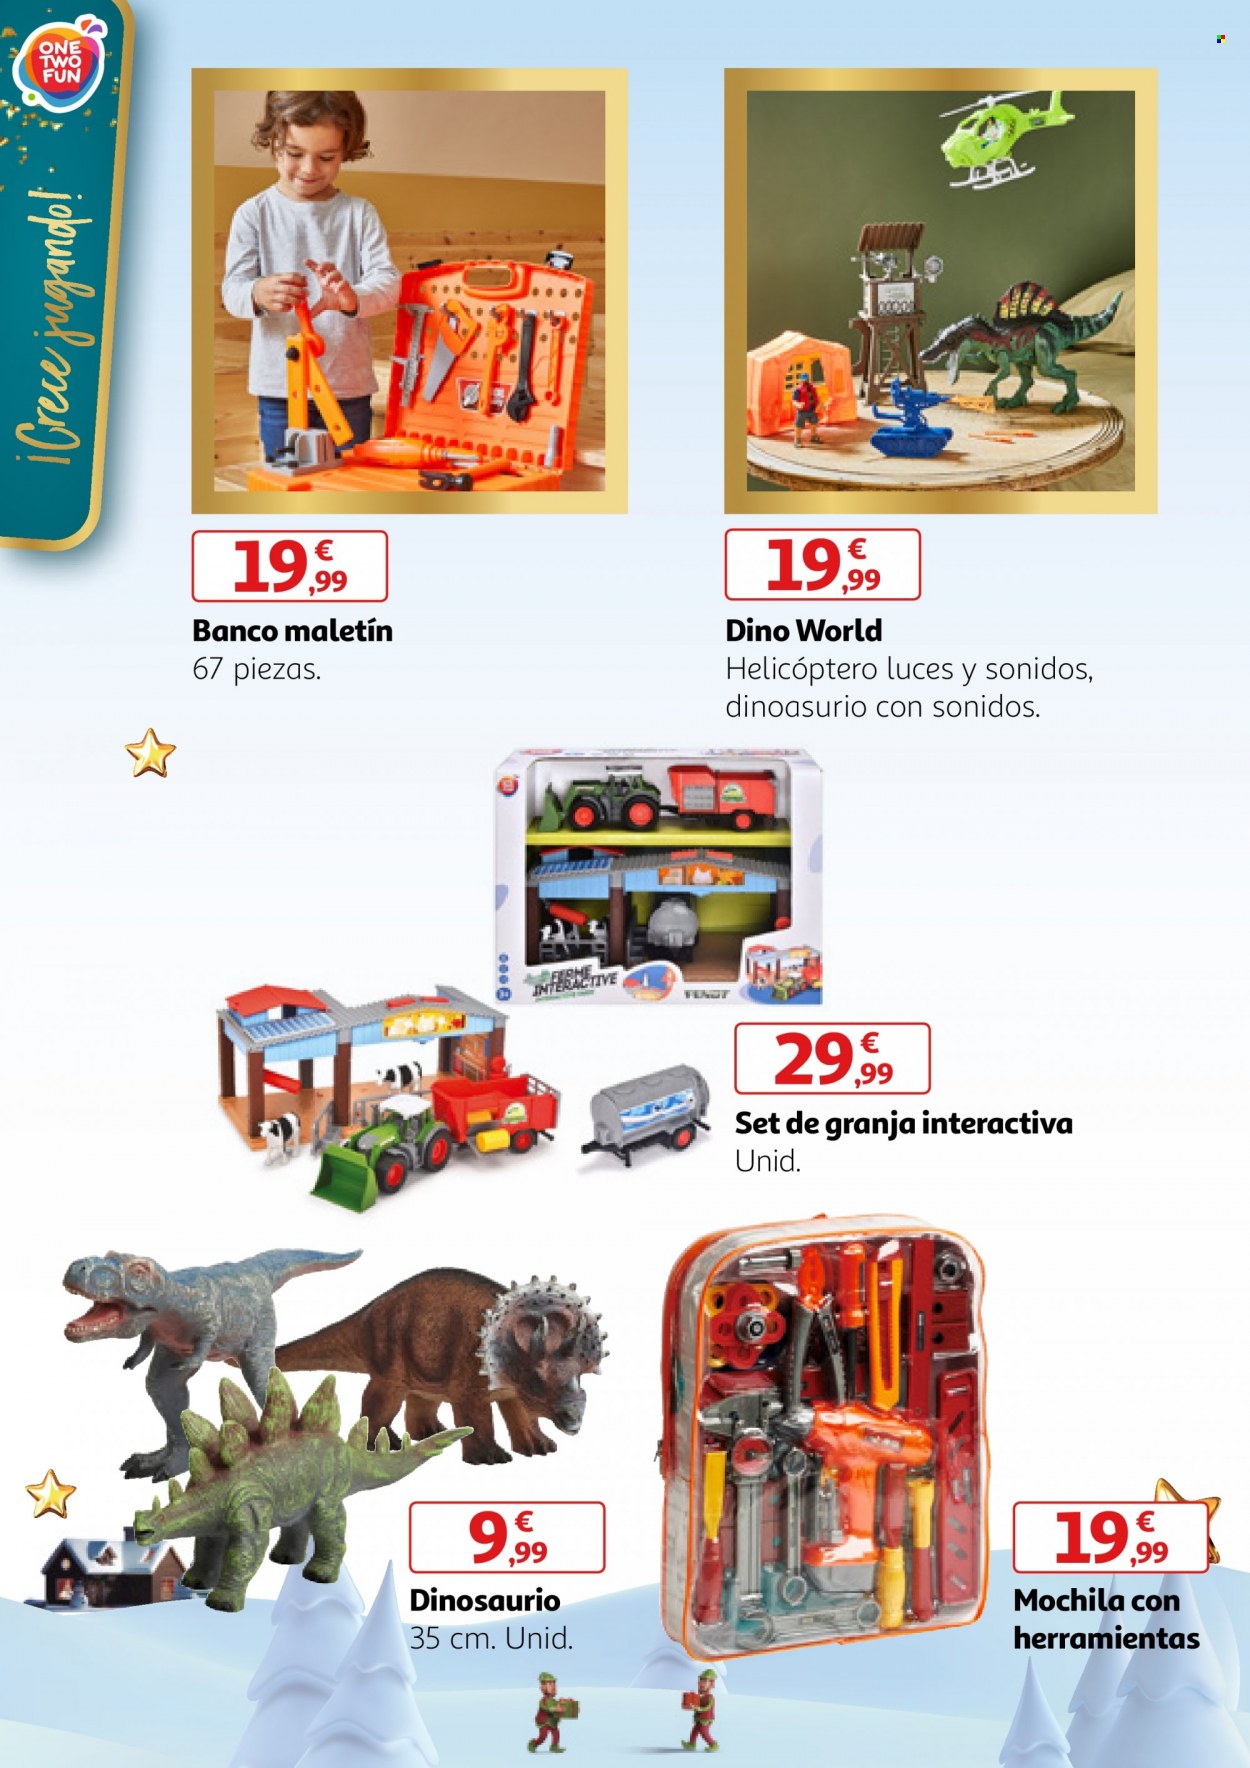 thumbnail - Folleto actual Alcampo - 29/11/22 - 18/12/22 - Ventas - herramienta miniatura, helicóptero, juguete, dinosaurio. Página 14.